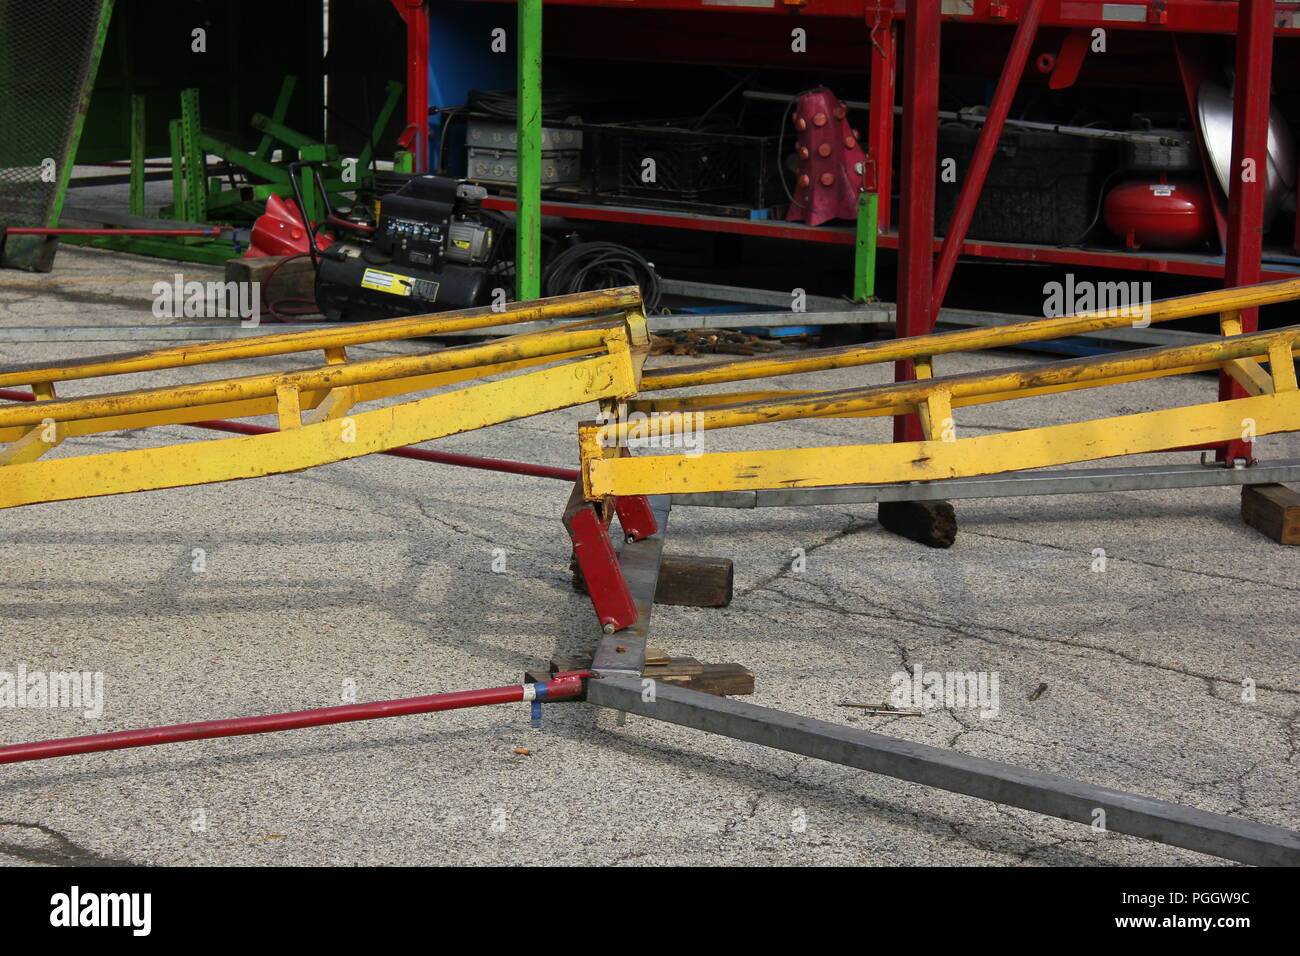 Disinnestata o rotture di binario per un viaggio carnevale kiddie ride roller coaster in costruzione in un centro commerciale parcheggio di Niles, Illinois, Stati Uniti d'America su una soleggiata mattina d'estate. Foto Stock